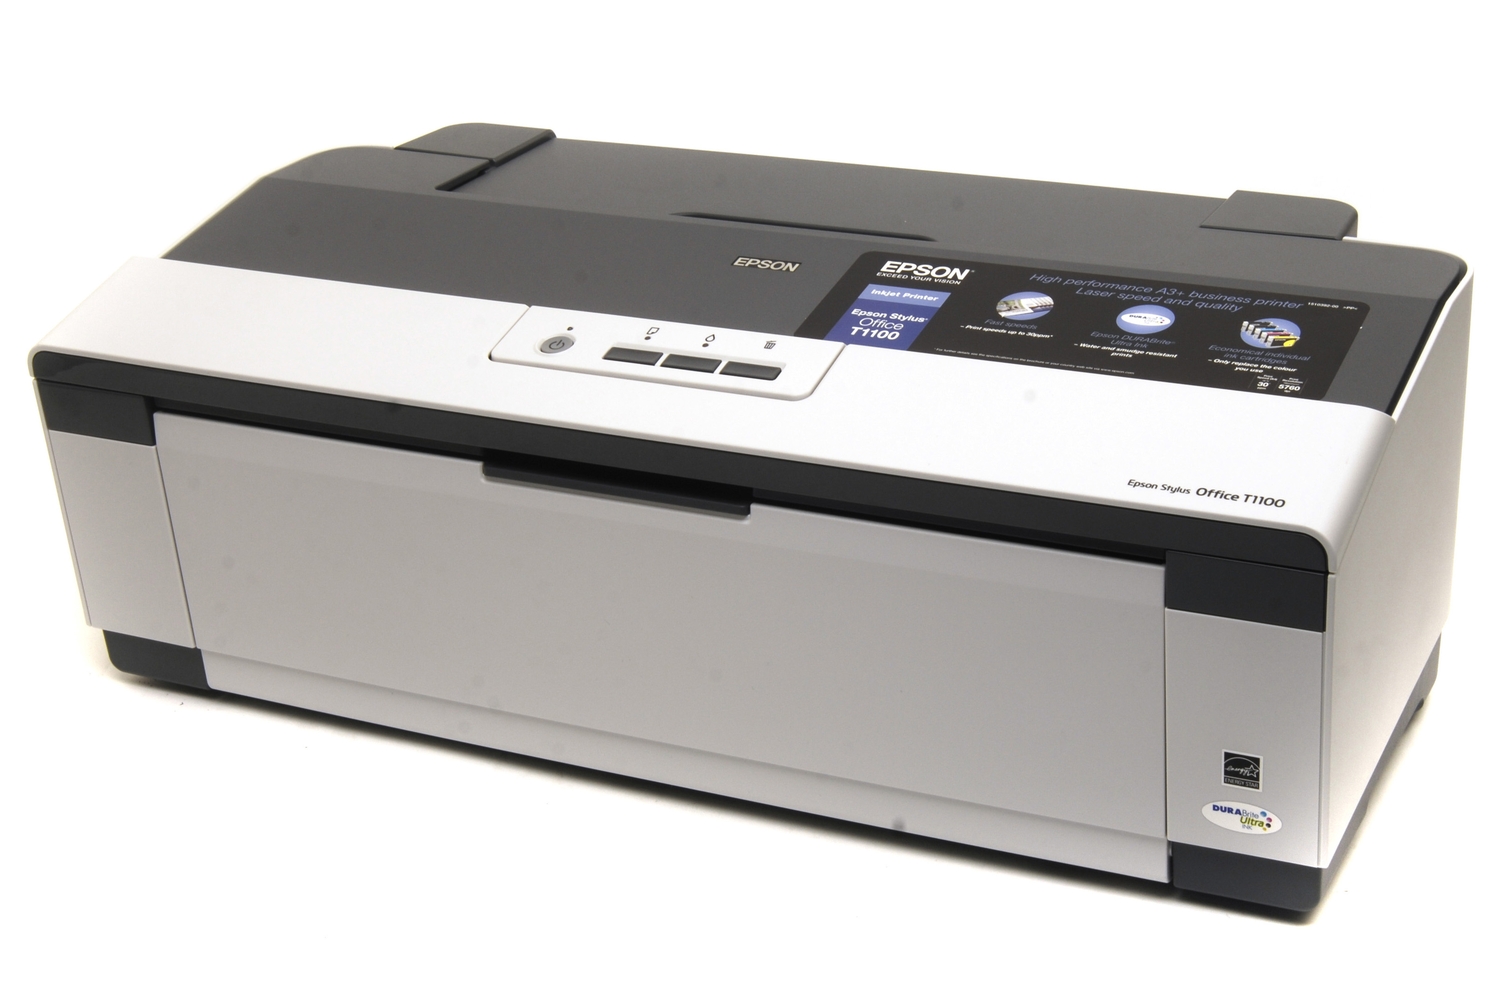 Скачать бесплатно драйвер для принтера Epson Stylus Office T1100